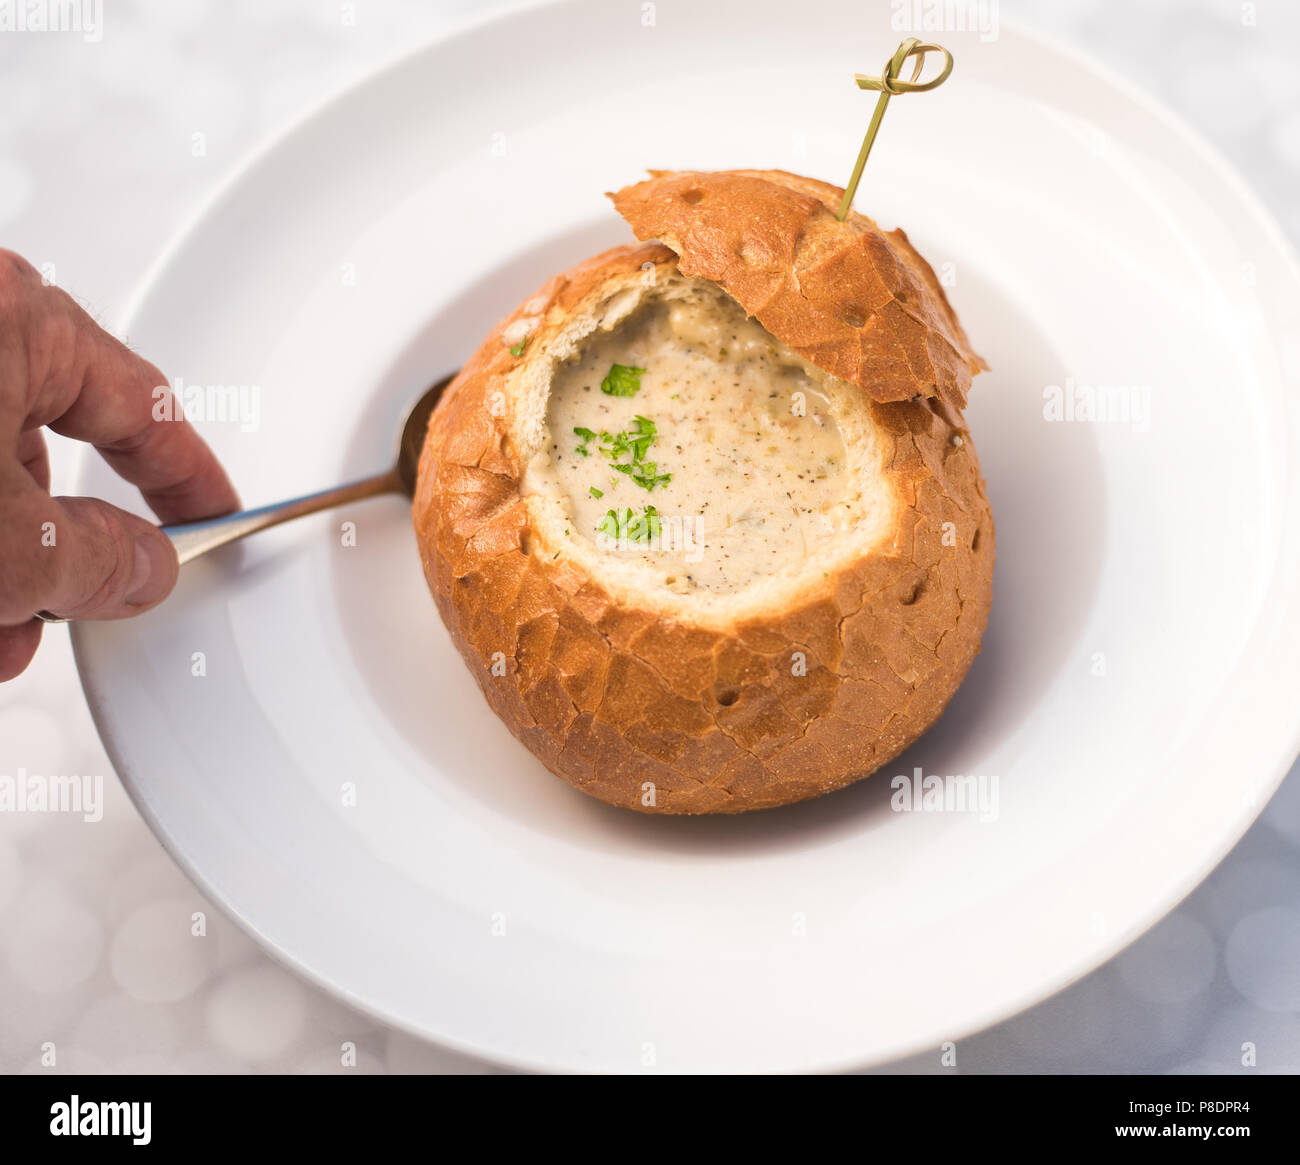 Deliciosa sopa cremosa en un cuenco de pan agrio Foto de stock